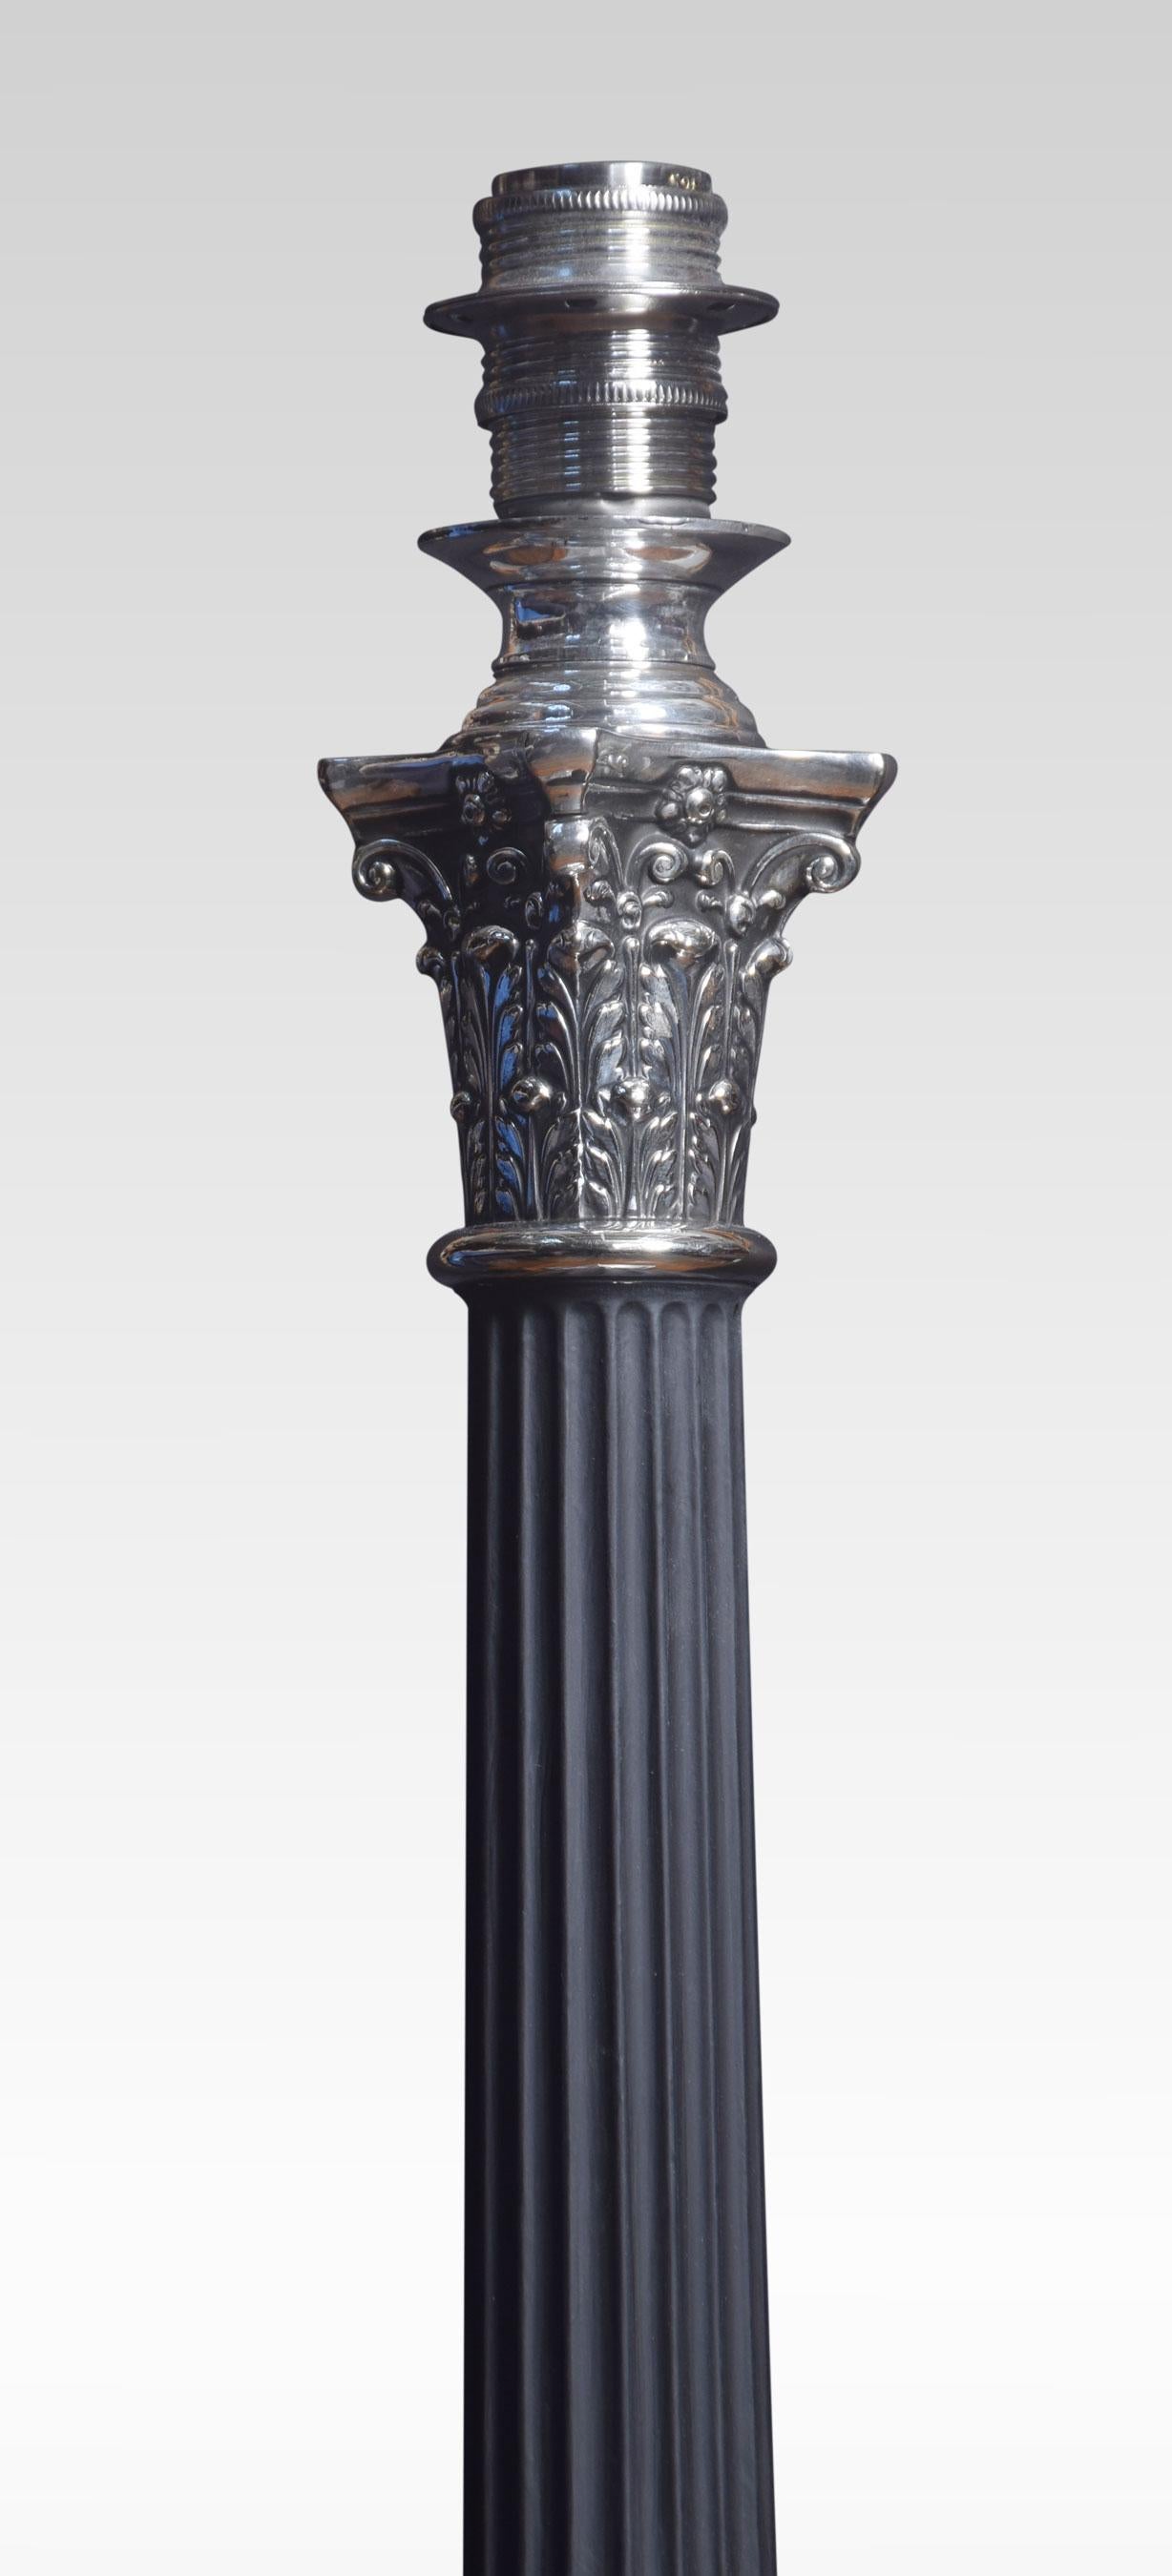 Galvanisierte Tischlampe mit einer korinthischen Säule auf einem abgestuften quadratischen Sockel. Die Lampe wurde neu verkabelt.
Abmessungen:
Höhe 19,5 Zoll
Breite 7 Zoll
Tiefe 7 Zoll.